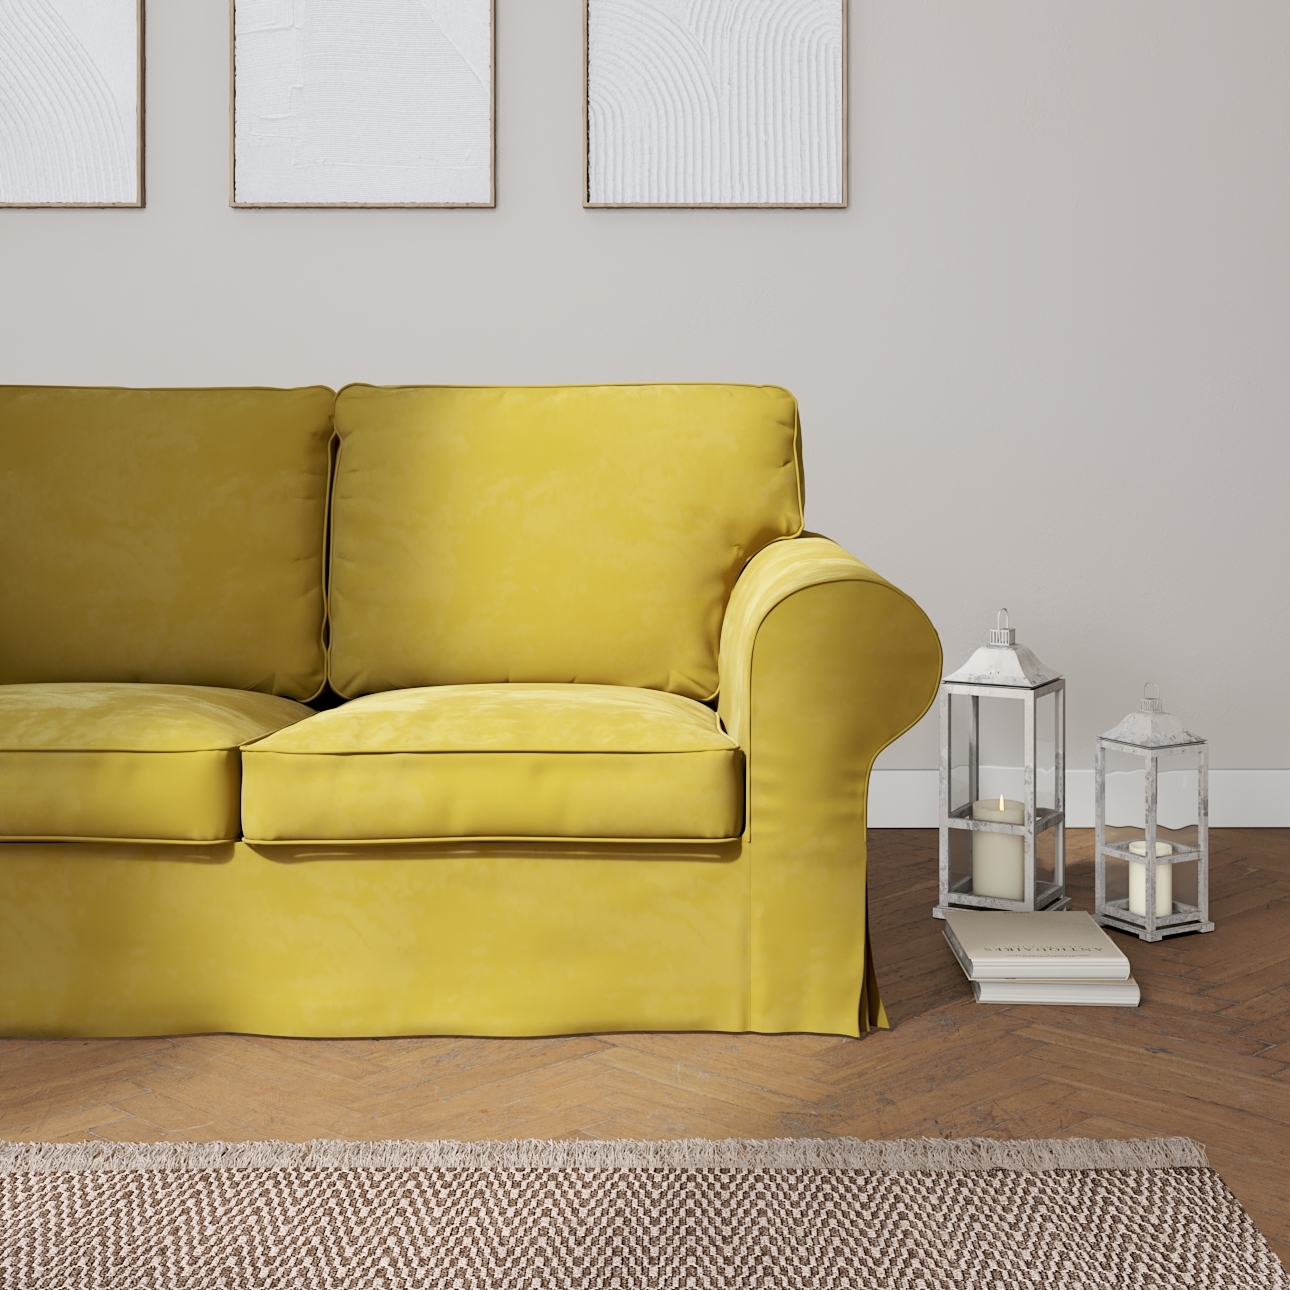 Bezug für Ektorp 2-Sitzer Schlafsofa NEUES Modell, olivegrün, Sofabezug für günstig online kaufen